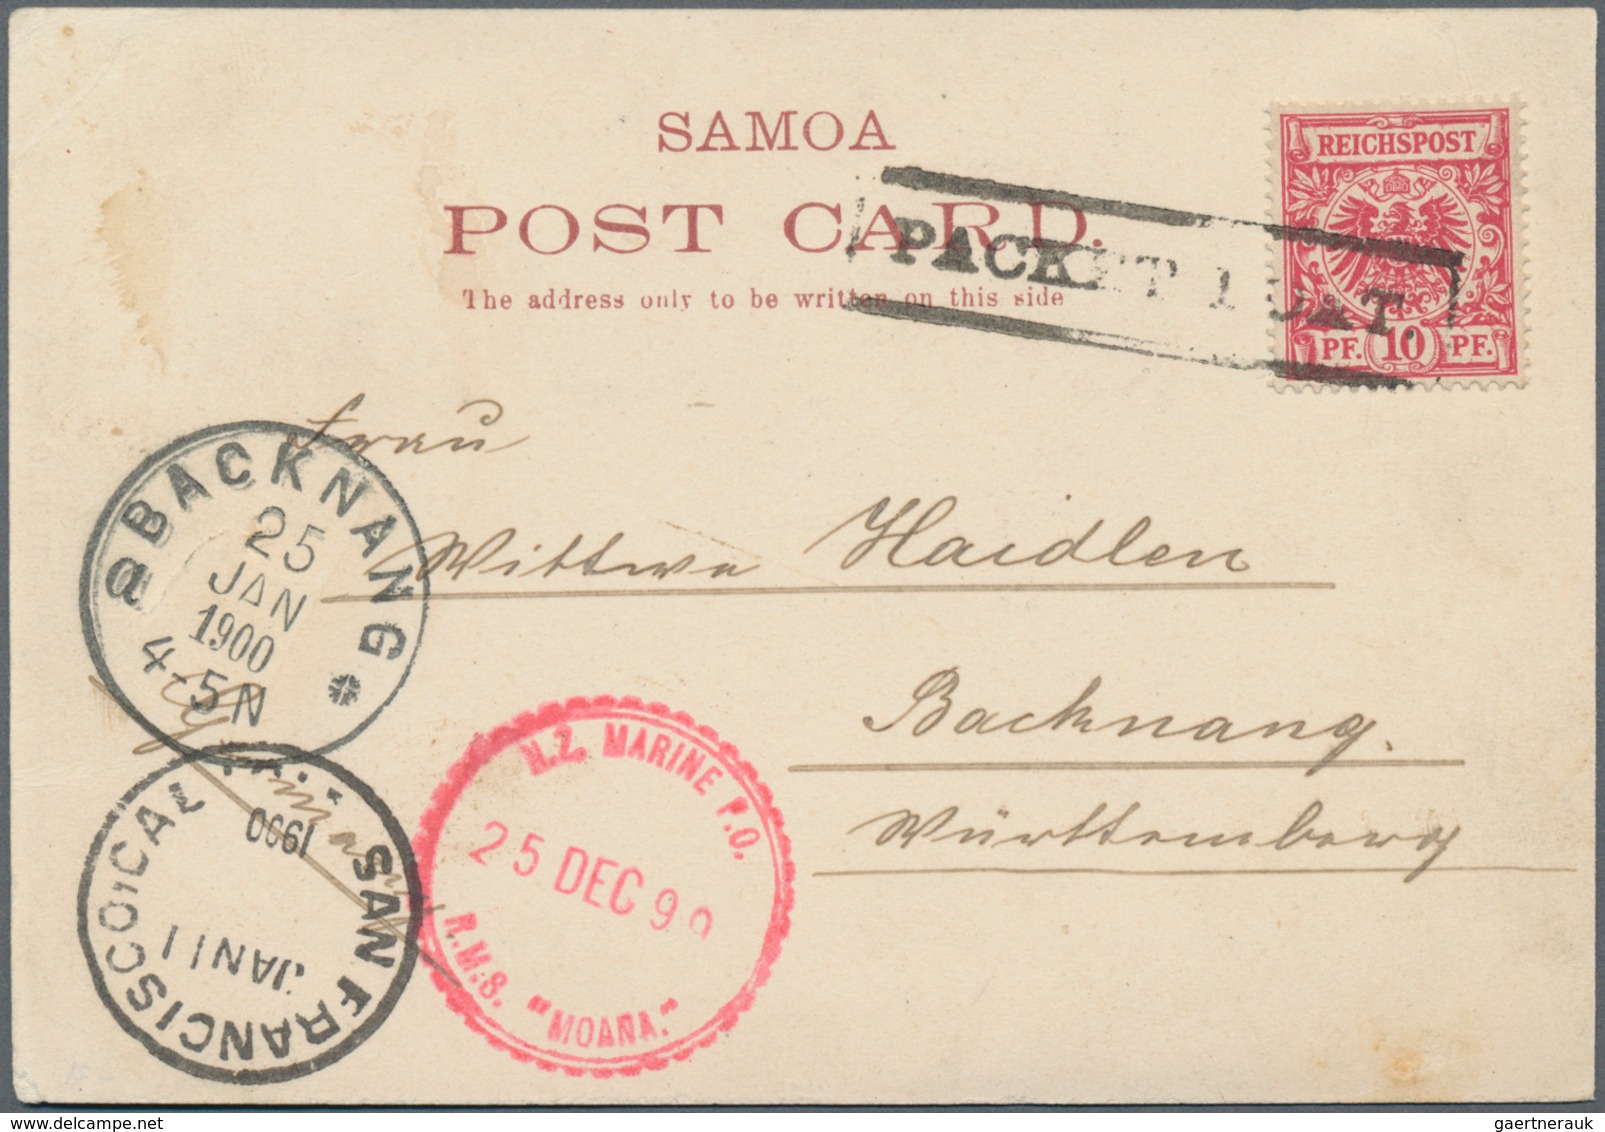 Deutsche Kolonien - Samoa: 1887/1913, Sammlungsbestand mit interessantem Vorläuferteil (u.a. Postdam